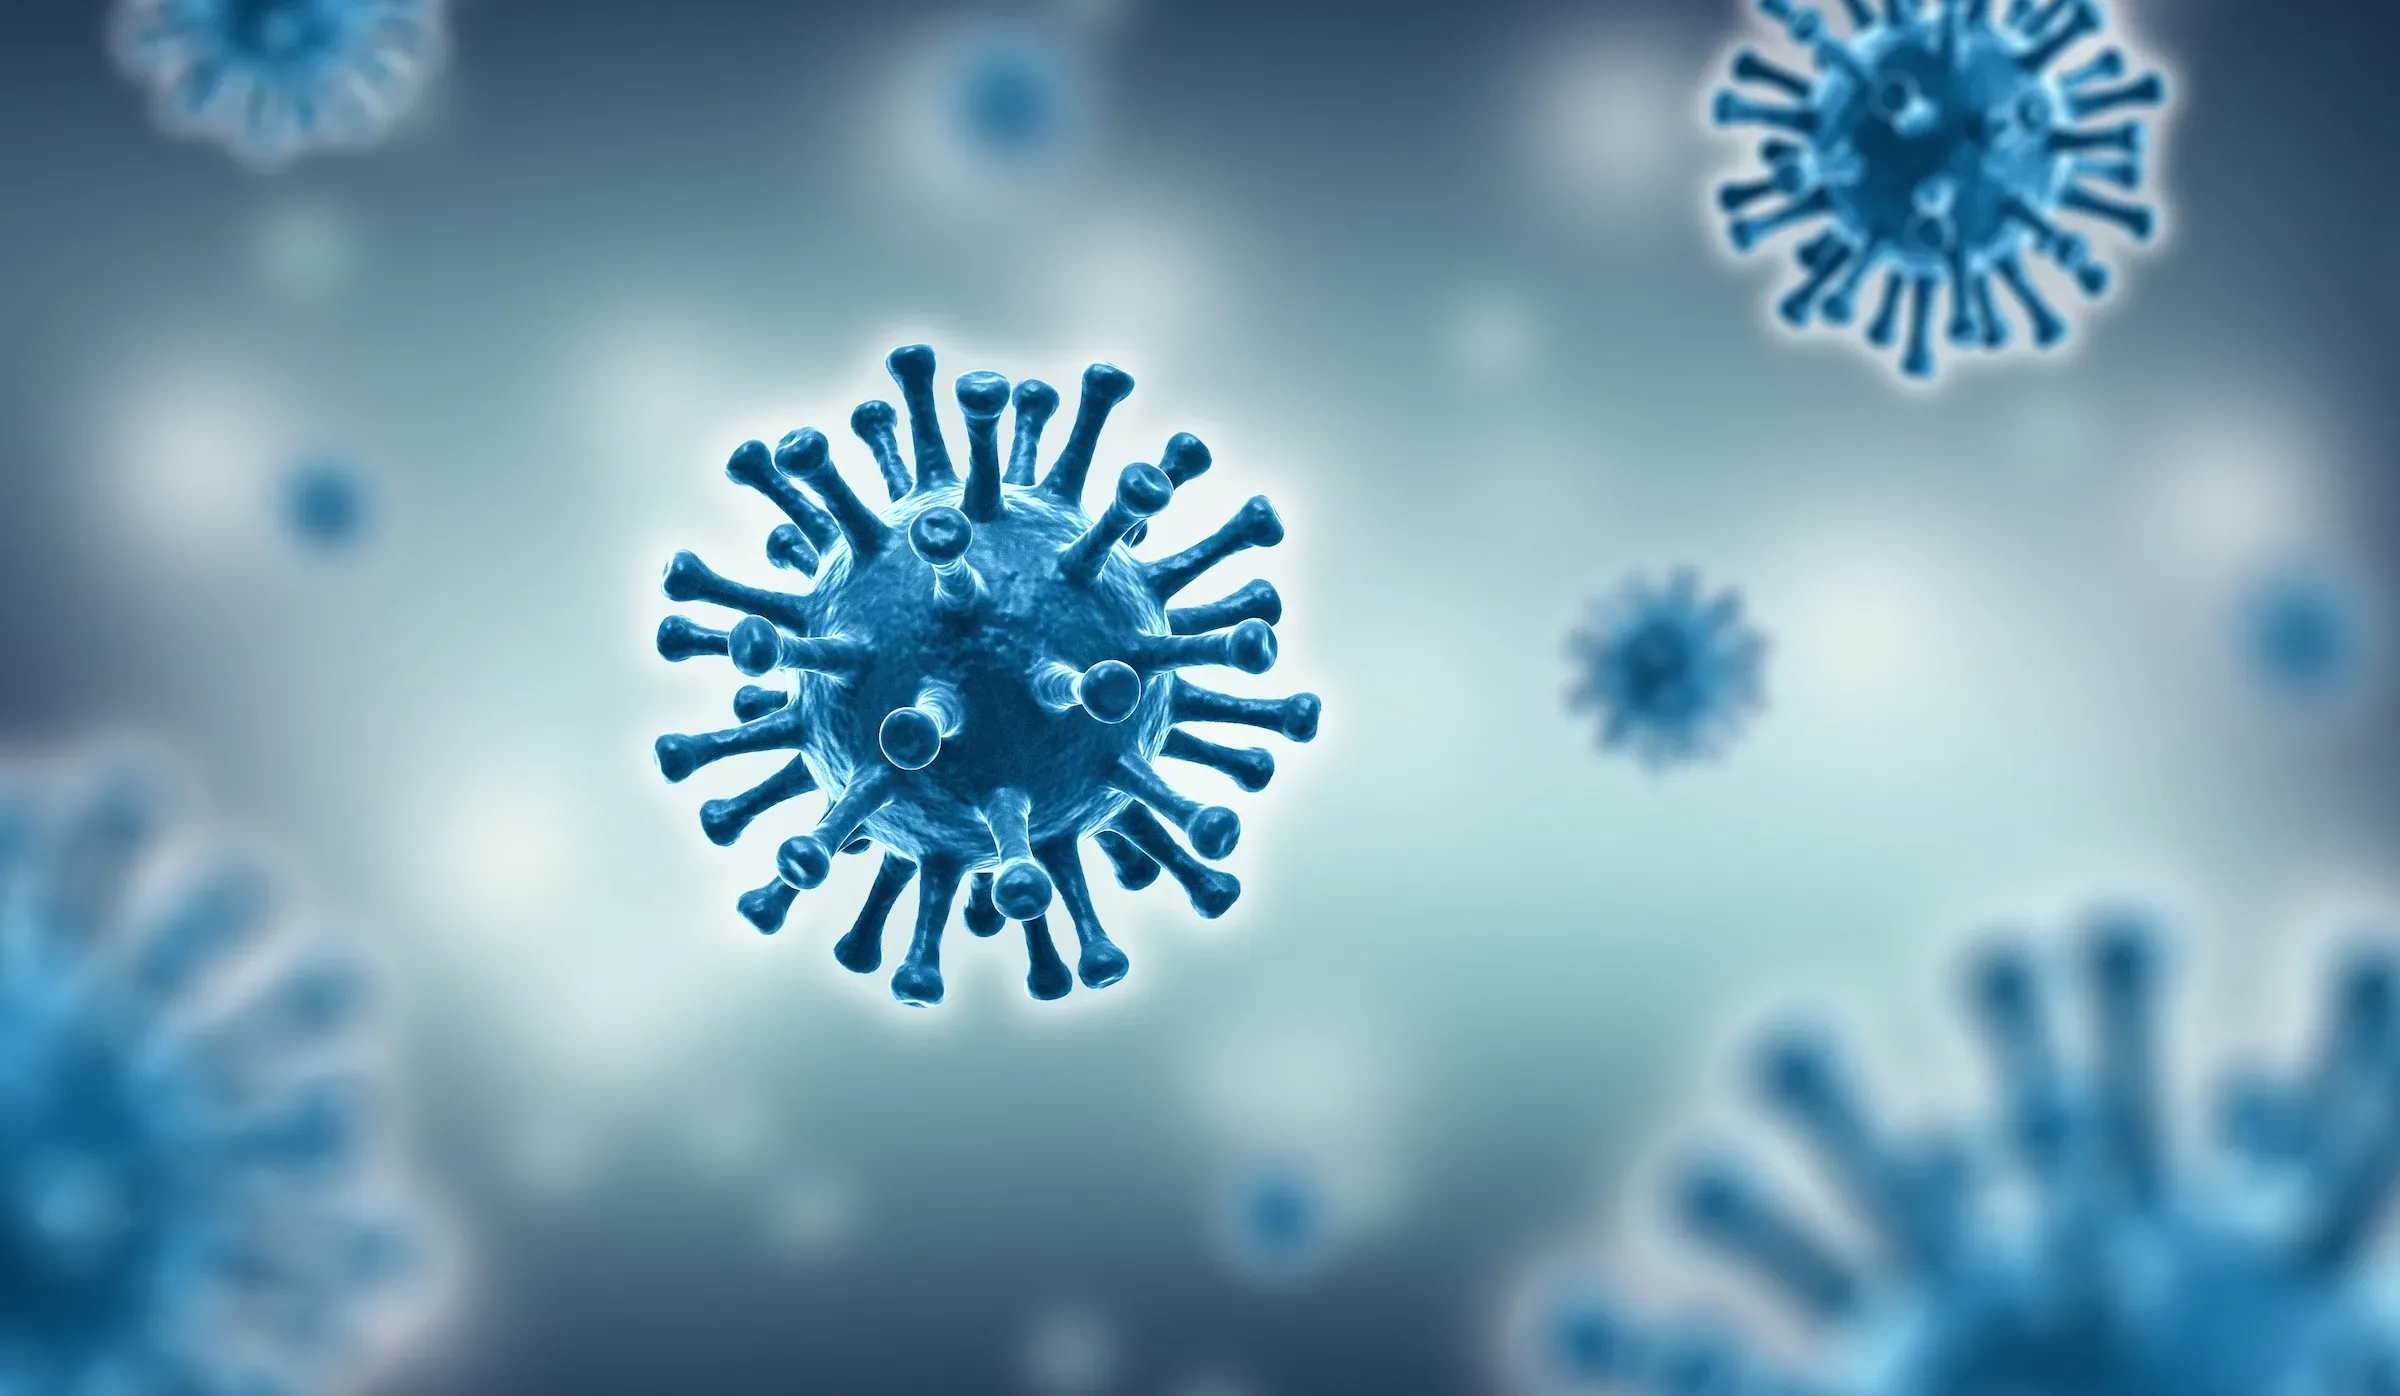 Corona Virus Background Image